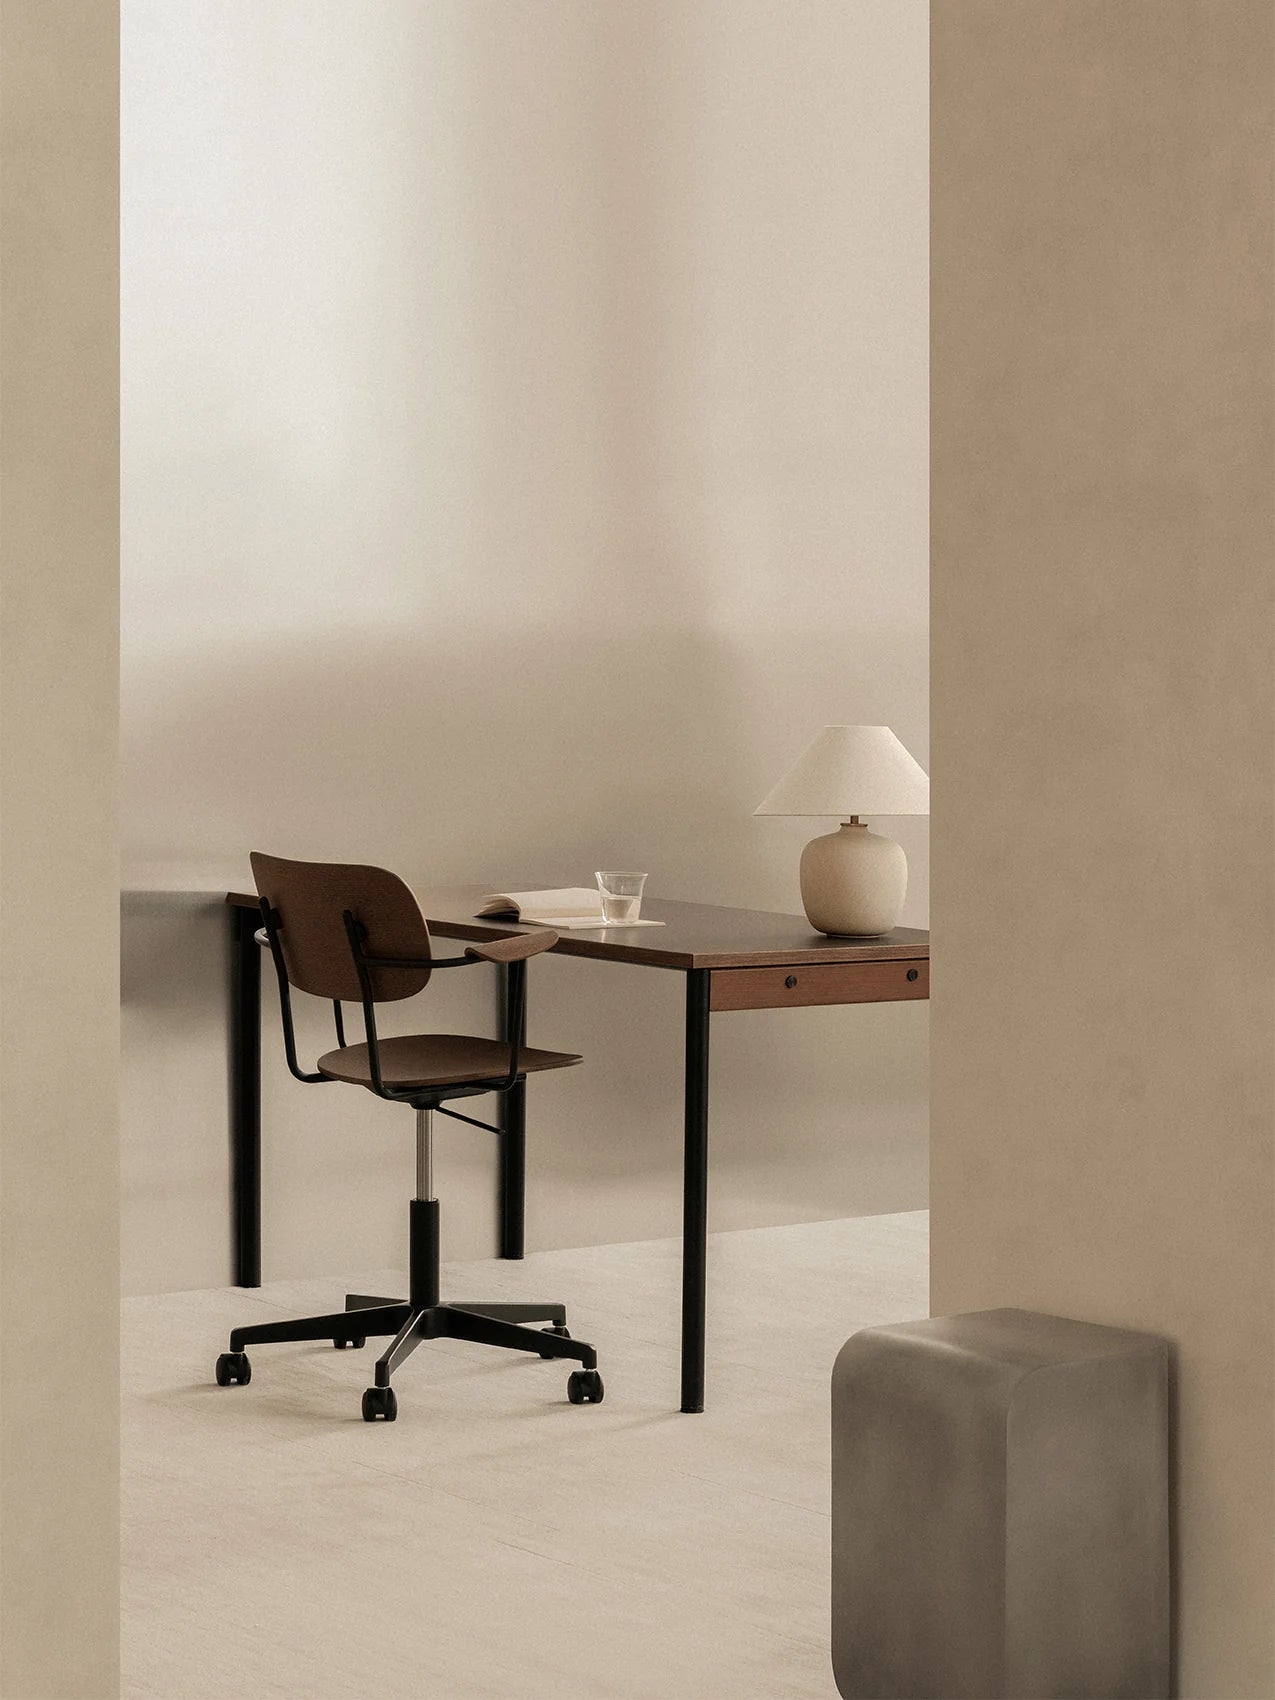 Audo Copenhagen Co Task Chair nexto brown desk in neutral beige office interior.